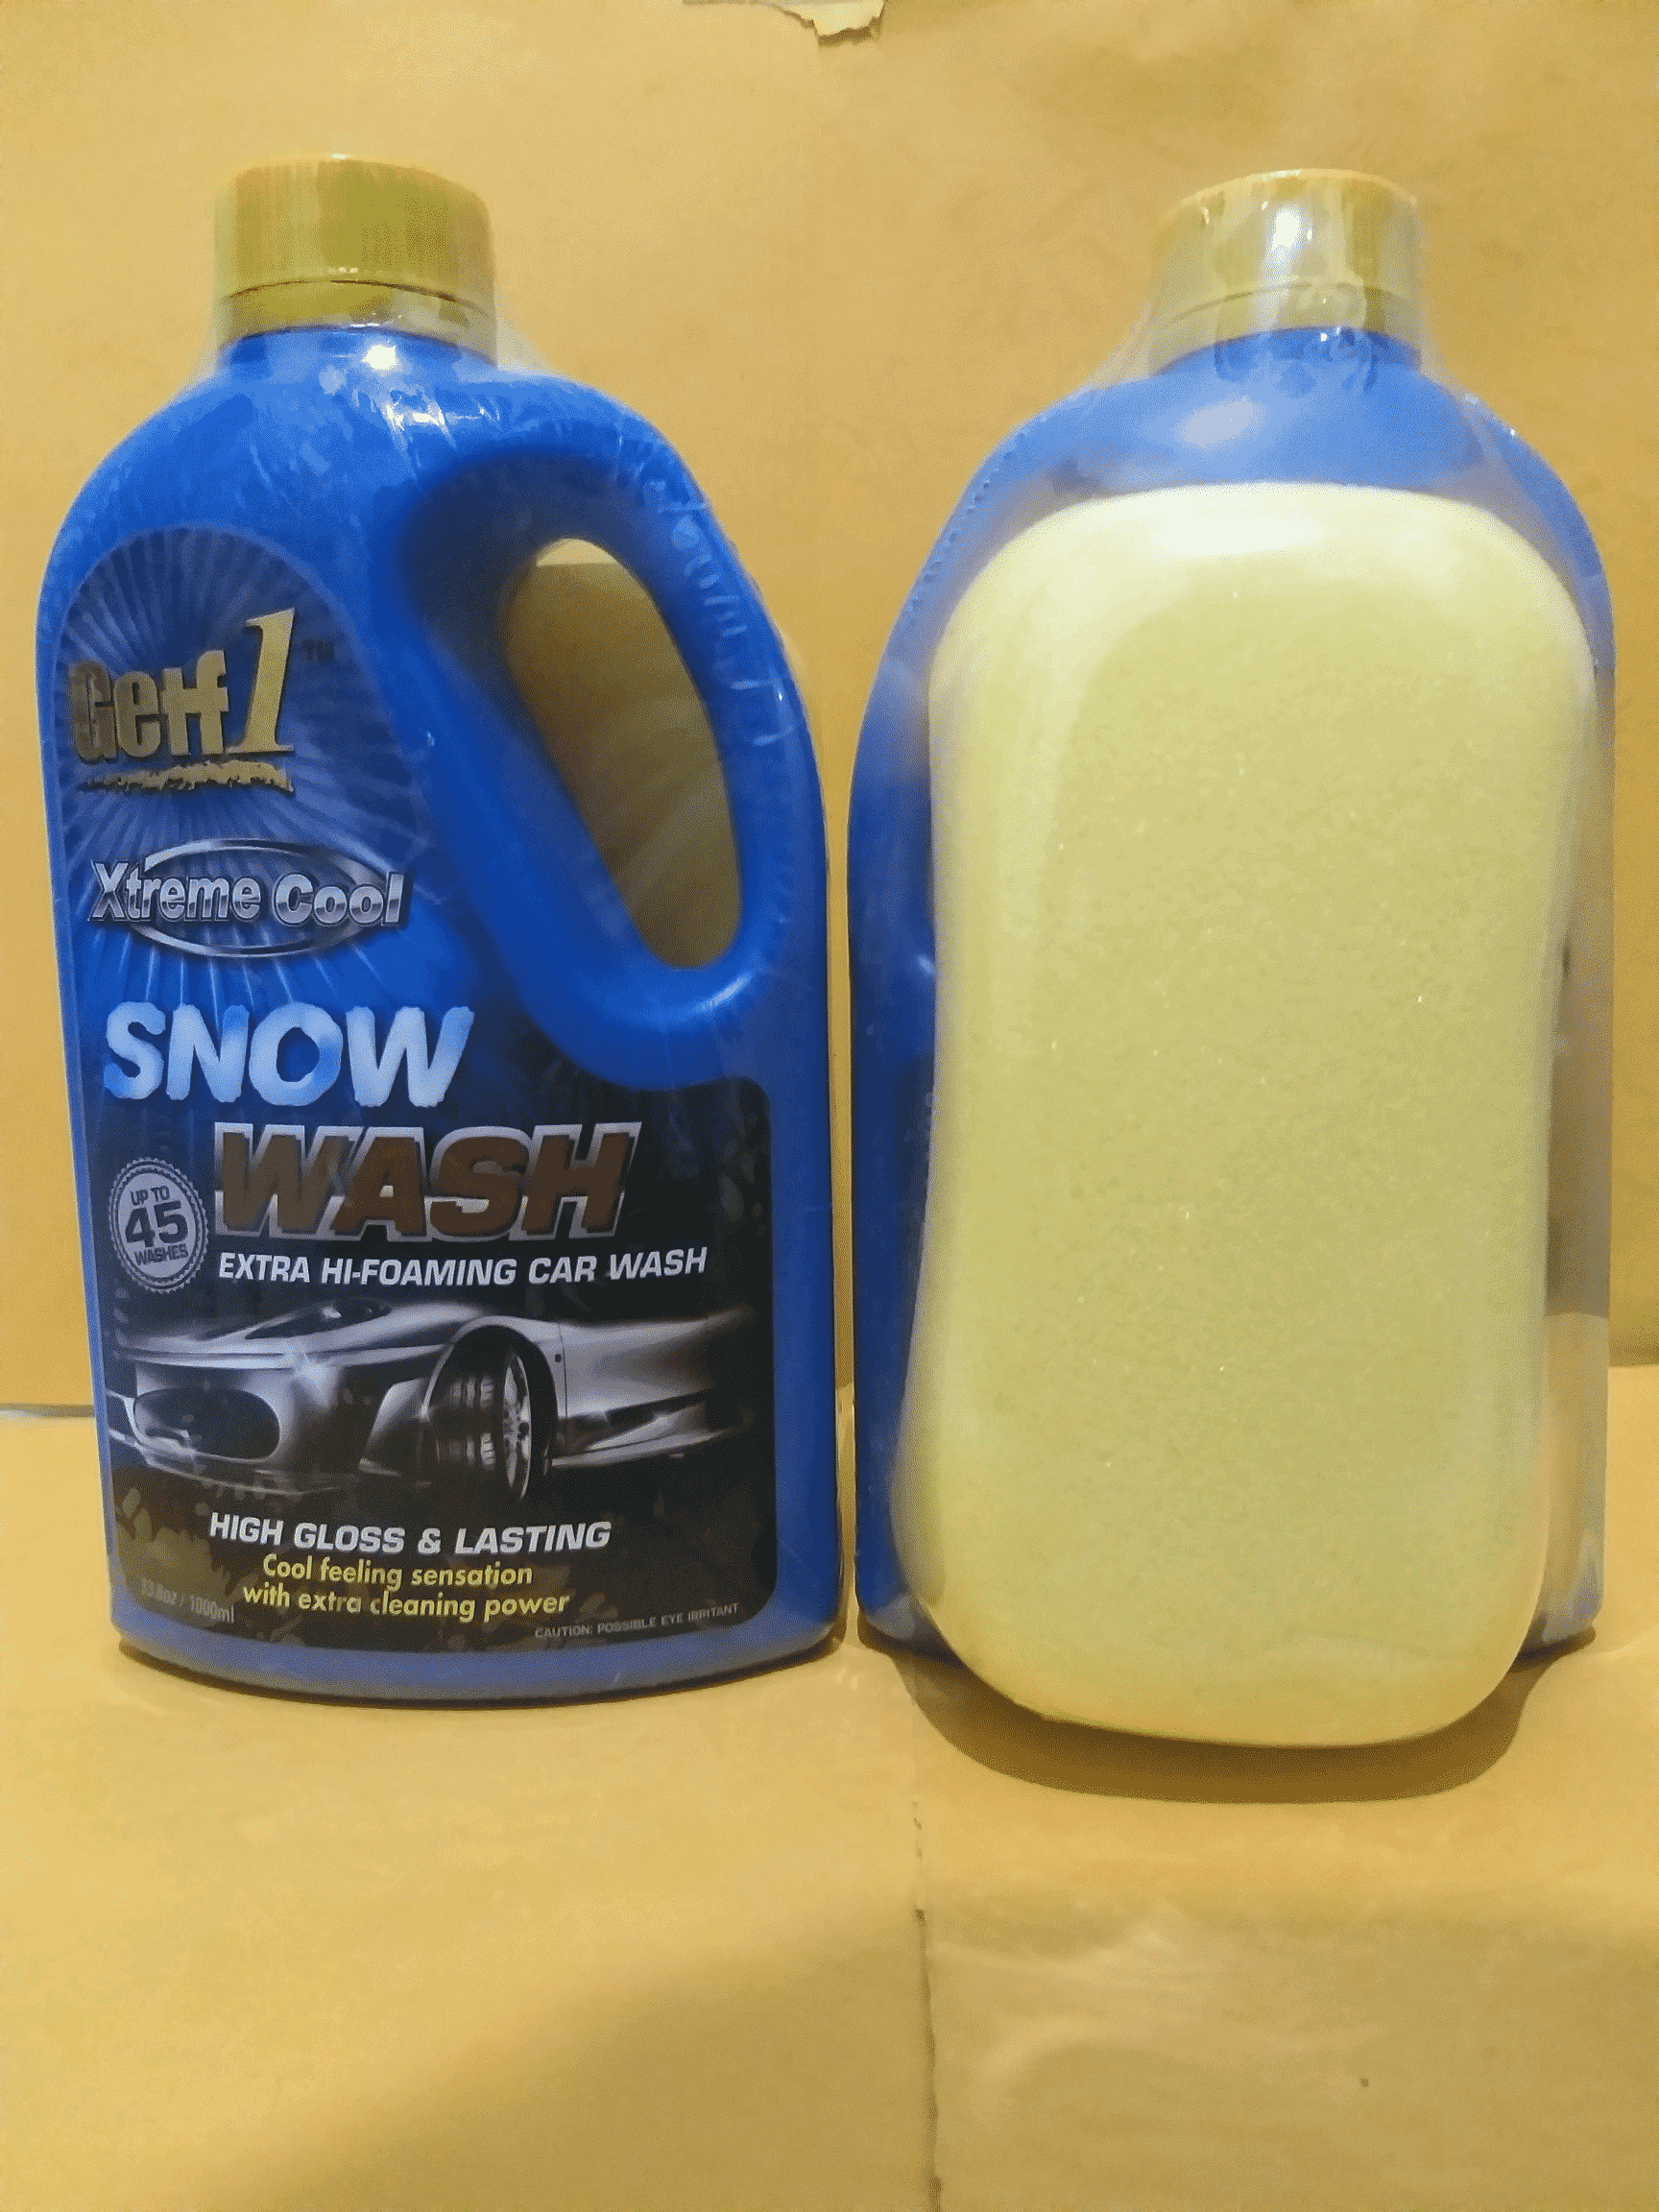 Getf1-Xtreme-Cool-Snow-Wash-Extra-Hi-Foaming-Car-Wash-Shampoo